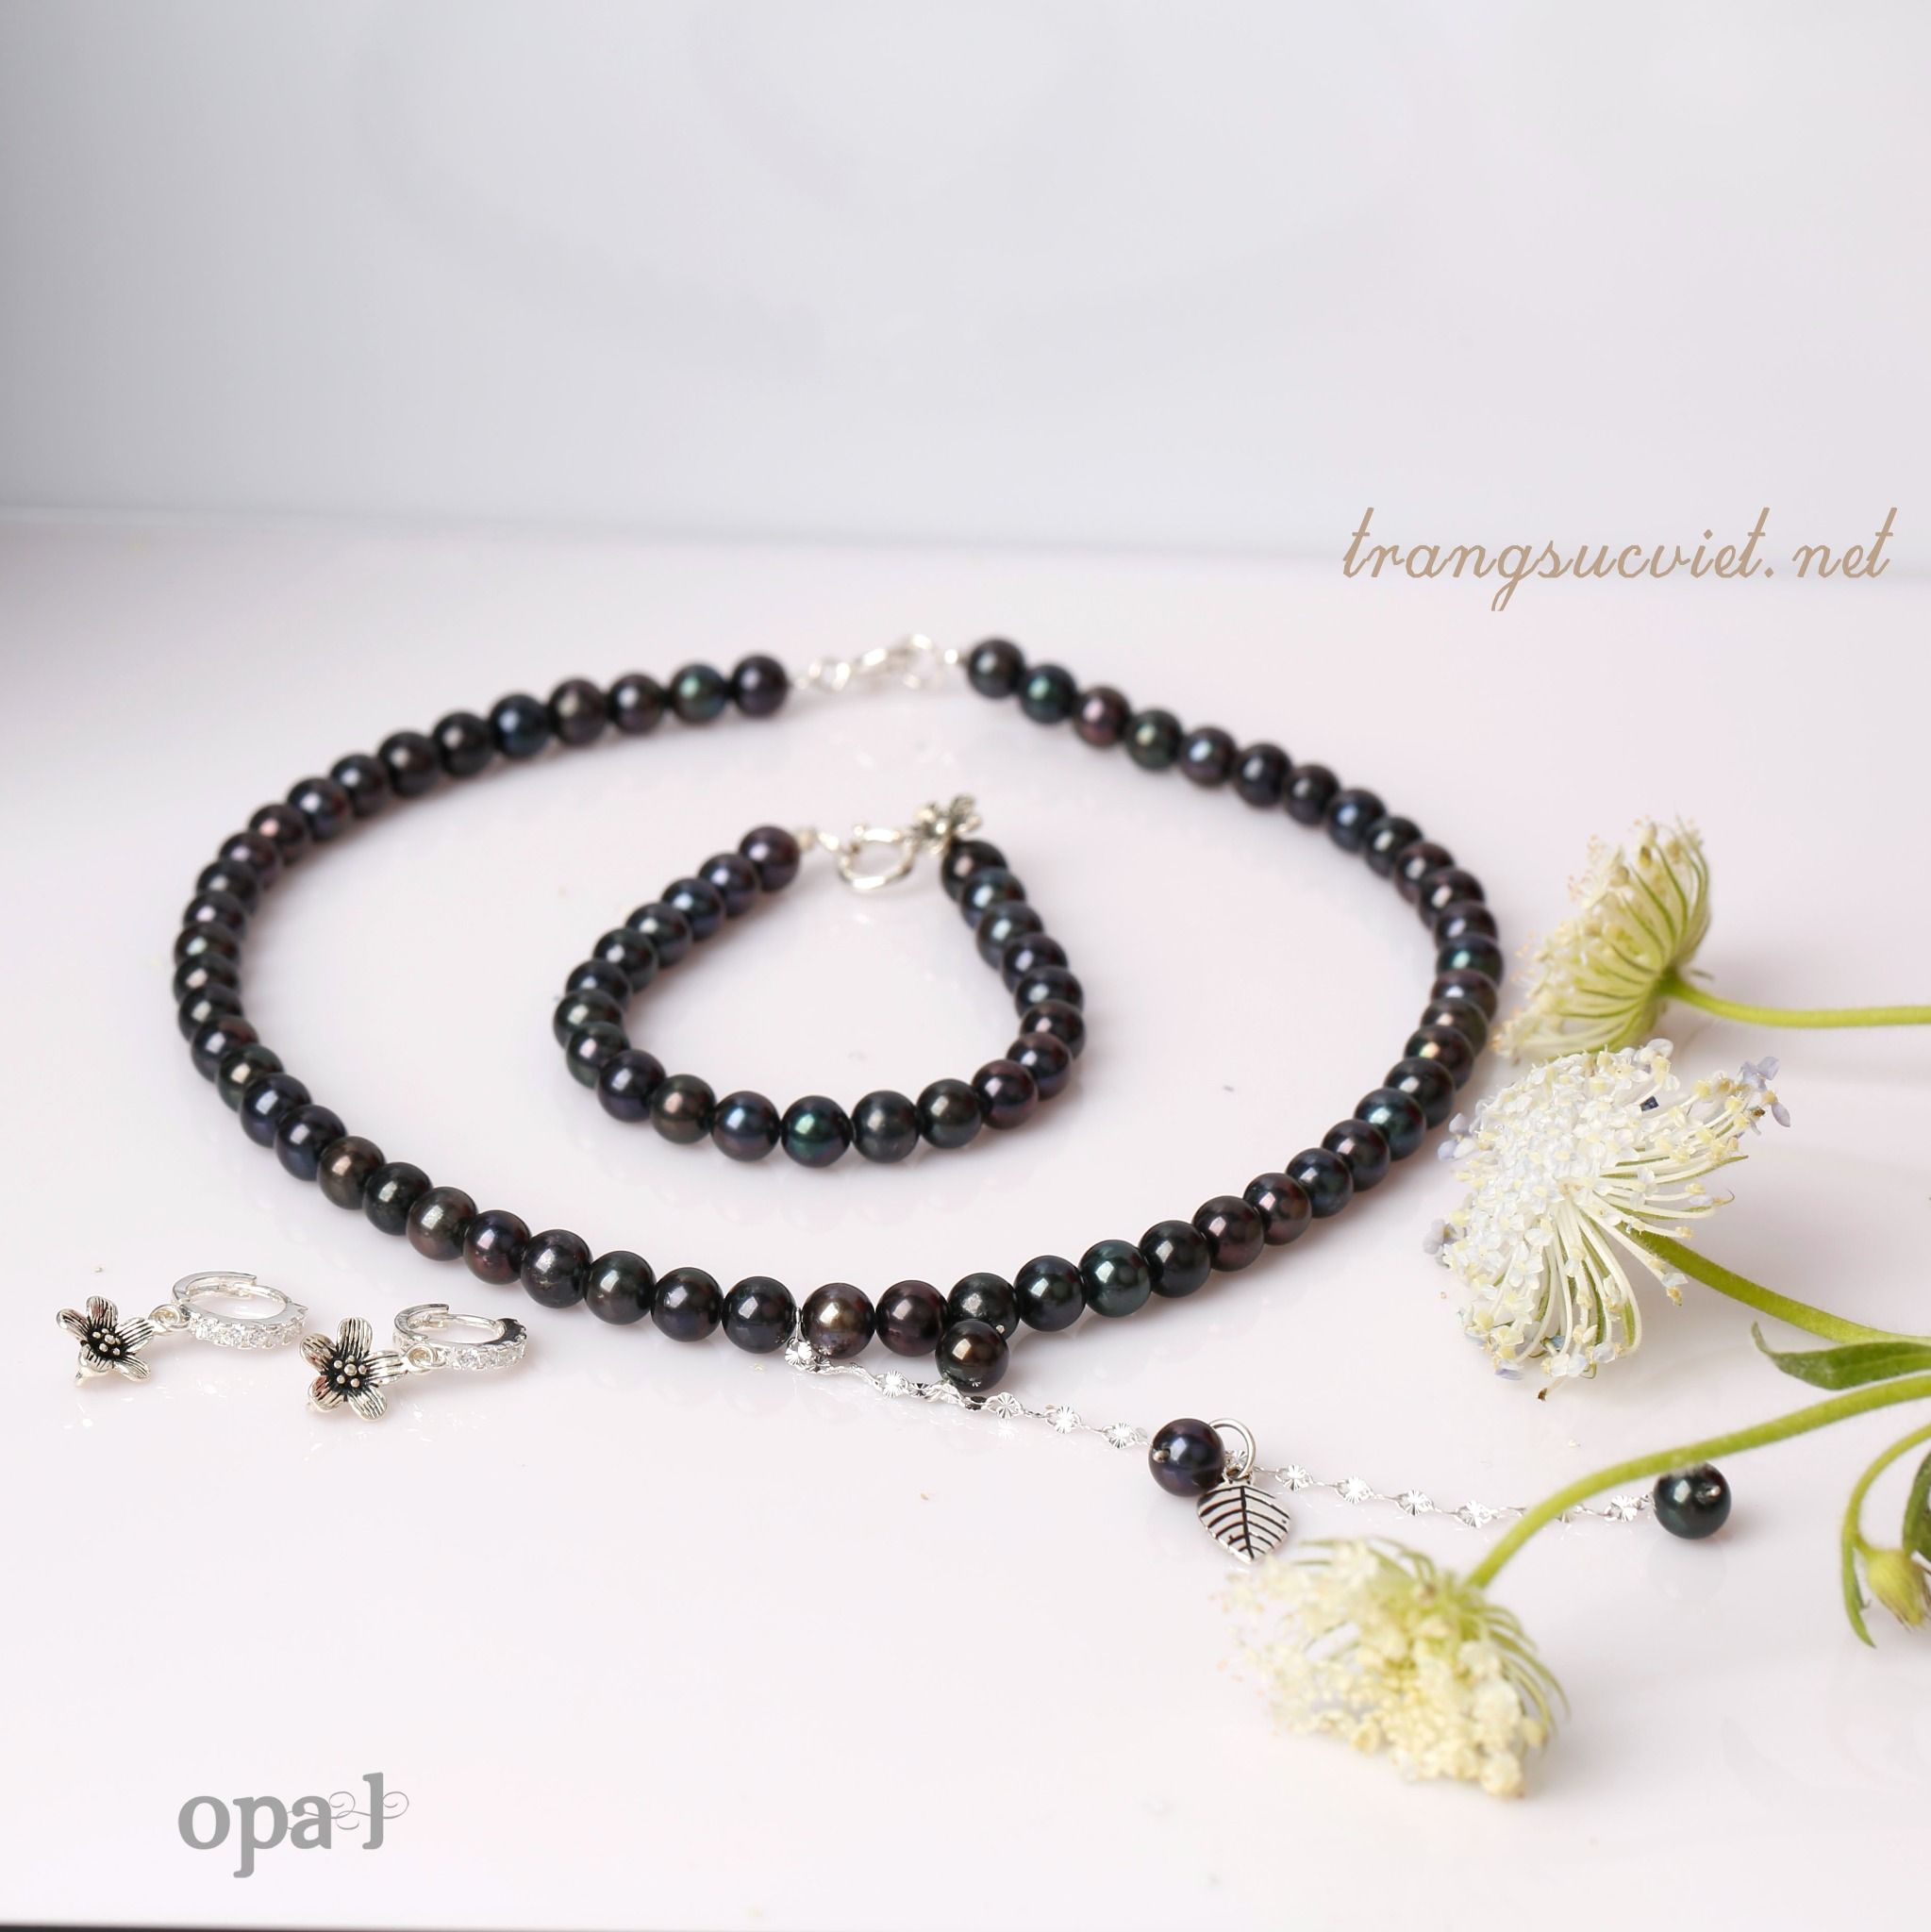  Bộ ngọc trai ánh đen mang phong cách đẳng cấp thiết kế phiên bản giới hạn, thương hiệu Opal. 